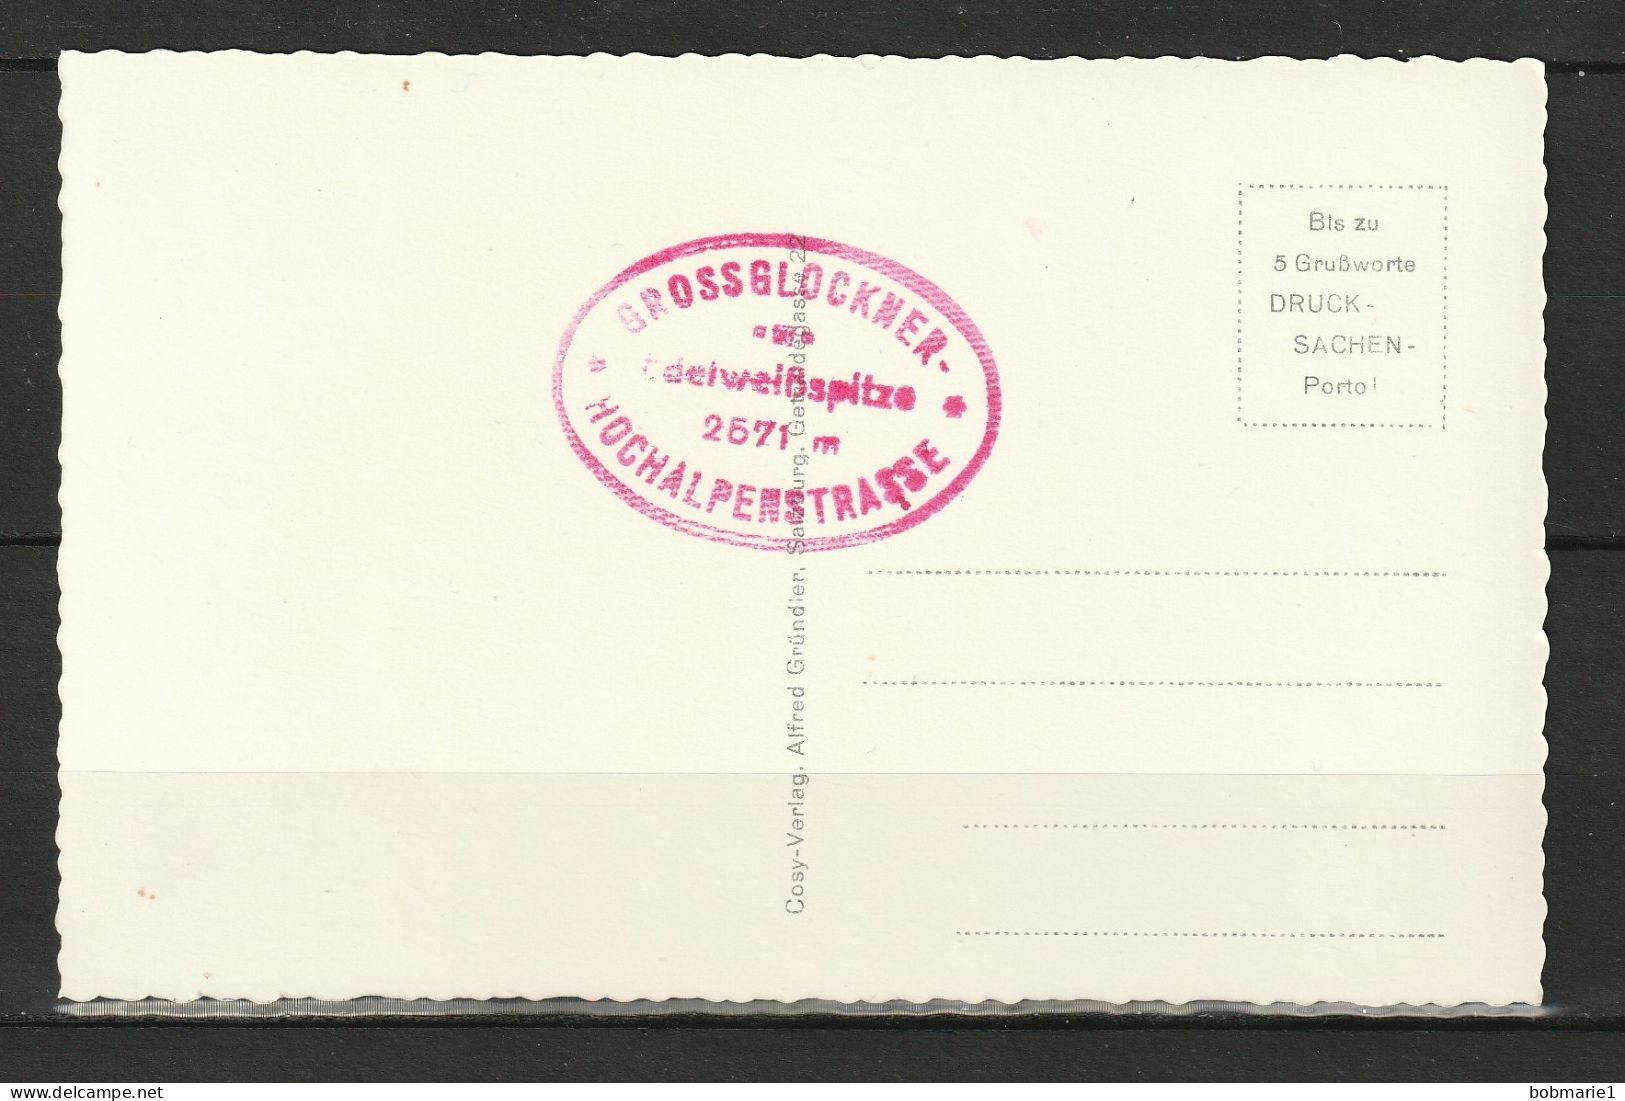 Carte Postale Autriche Grossglockner Hochalpenstabe Edelweibhutte 2571m. Non Circulée, Noir Et Blanc, Coupe Dentelée - Collections & Lots